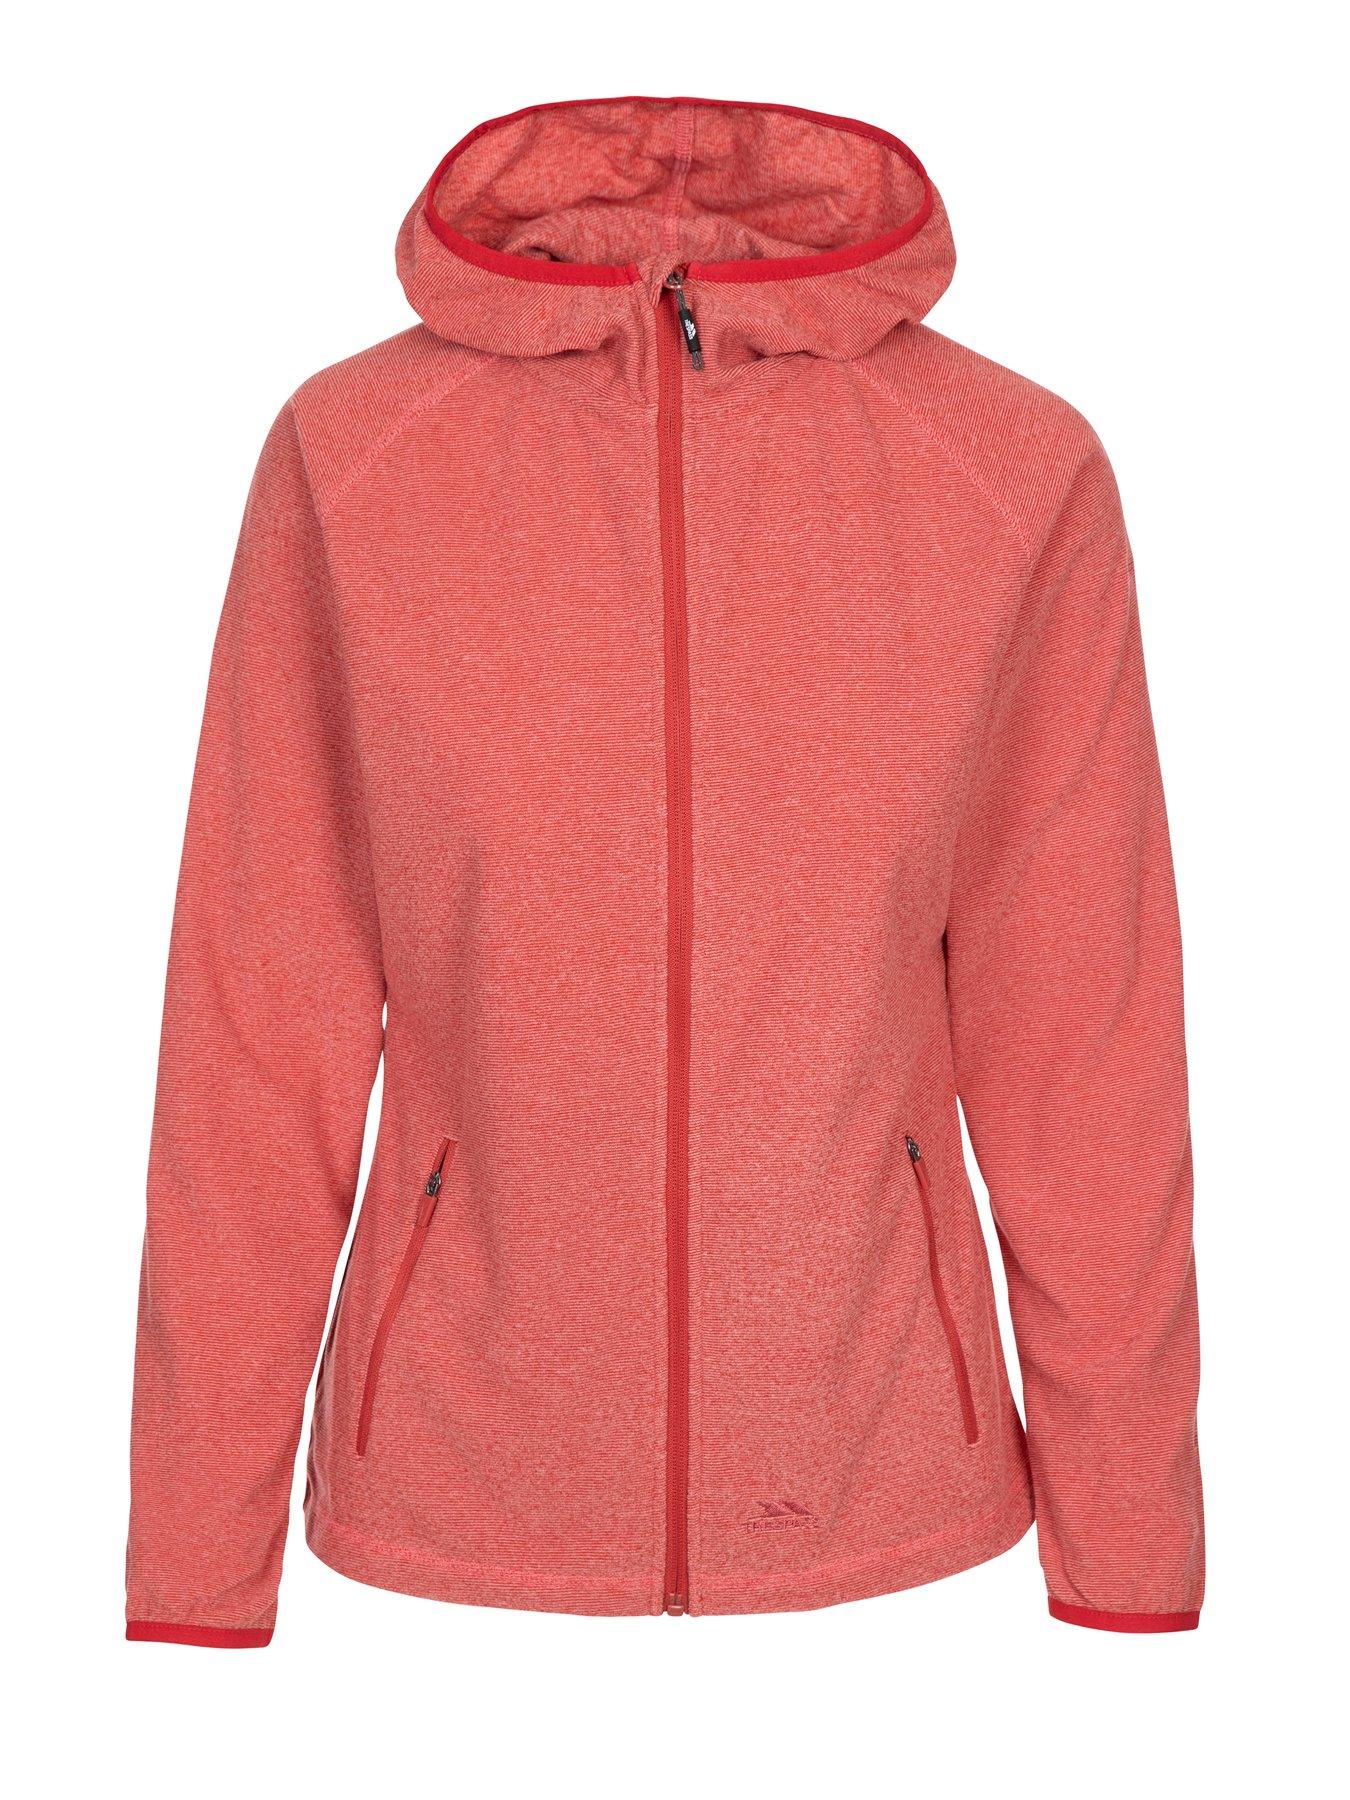 Women Jennings Full Zip Fleece Jacket - Red